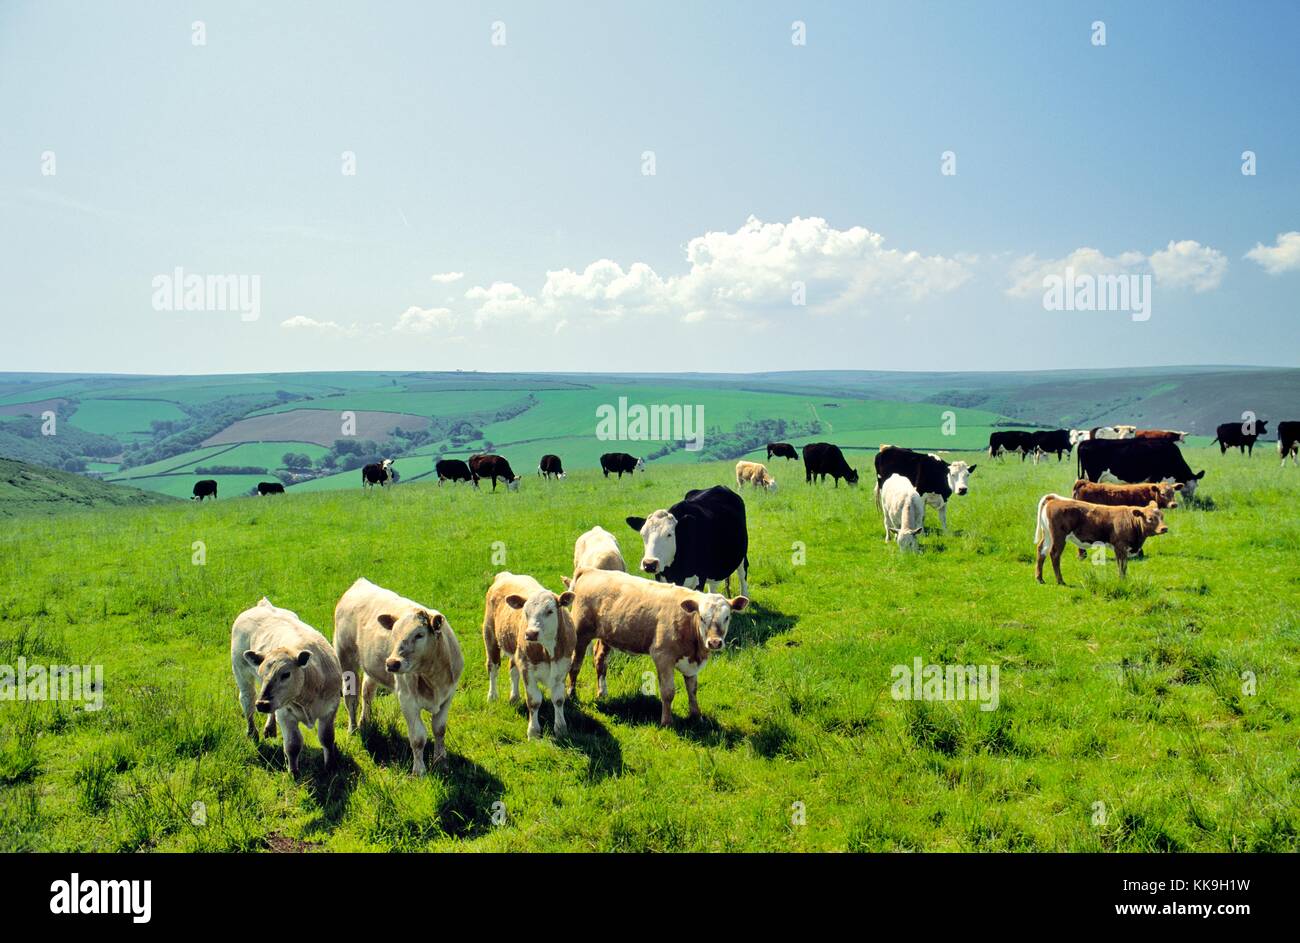 Le pâturage du bétail paître les vaches dans les pâturages d'été exmoor national park près de brendon, Devon, Angleterre, Royaume-Uni. Banque D'Images